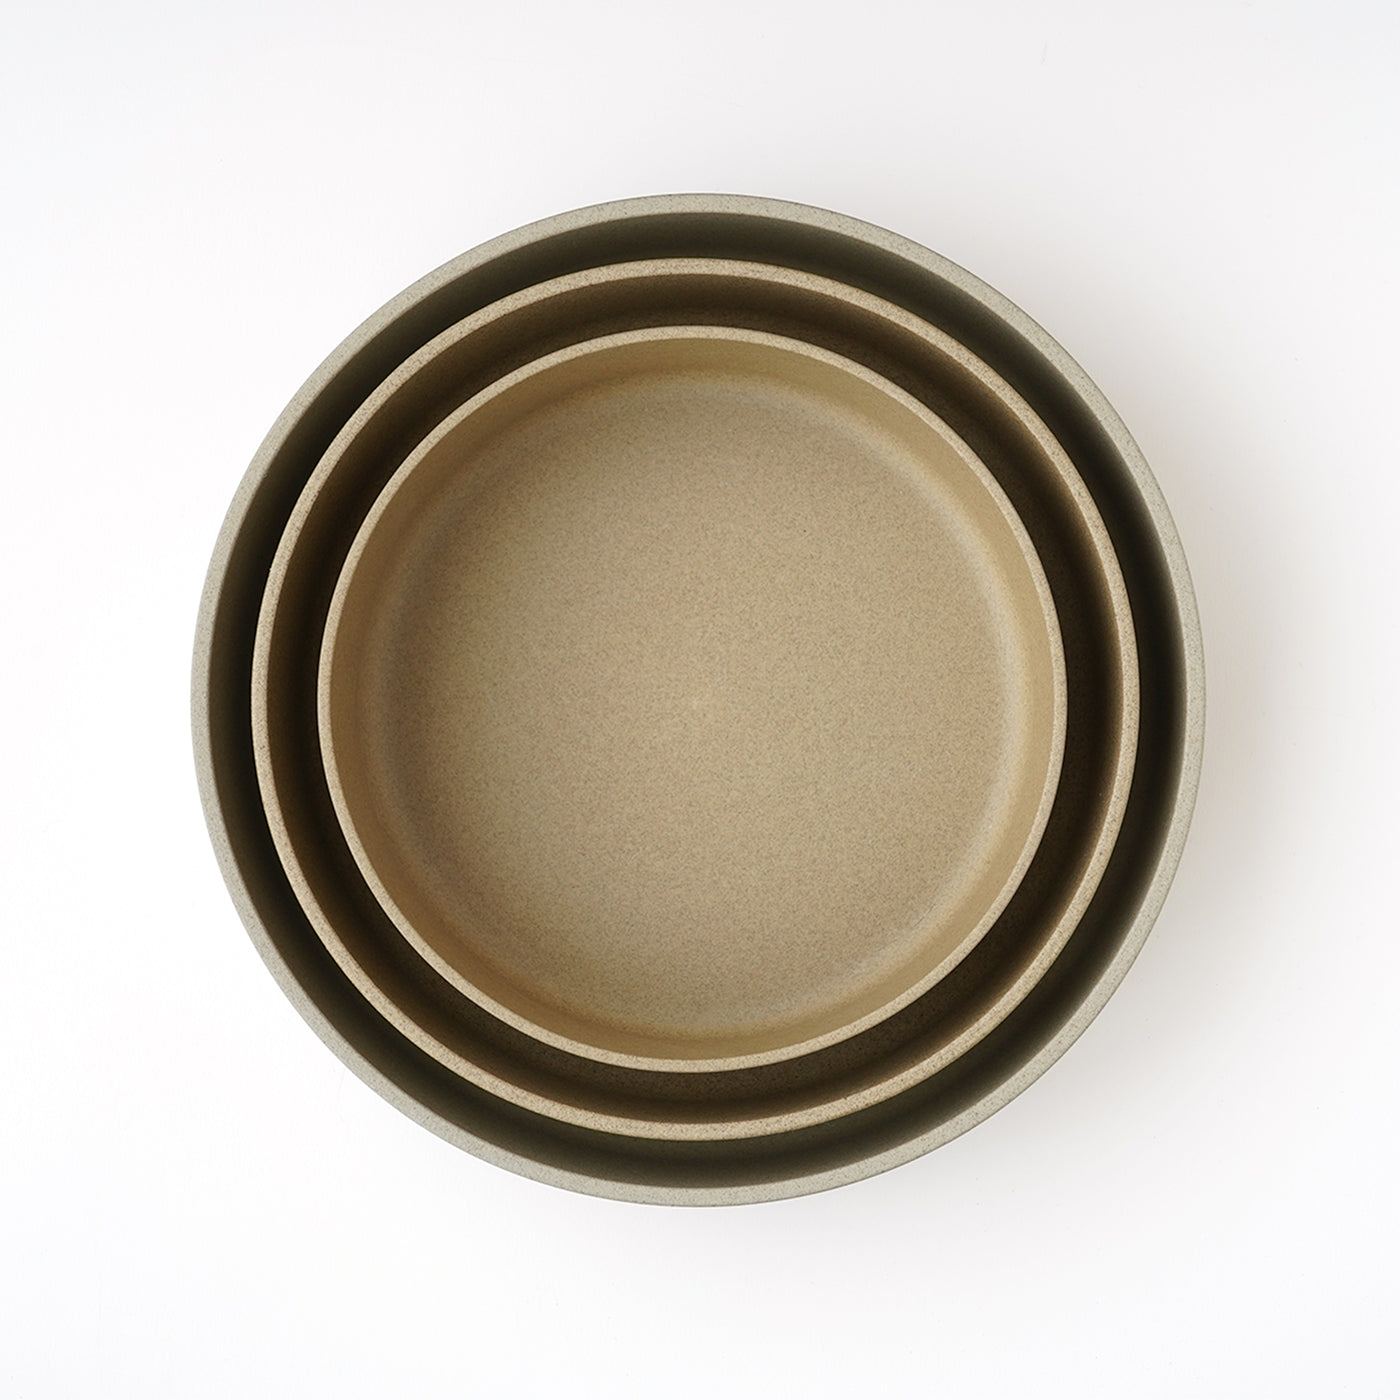 Hasami Porcelain Bowl 7 3/8" Natural